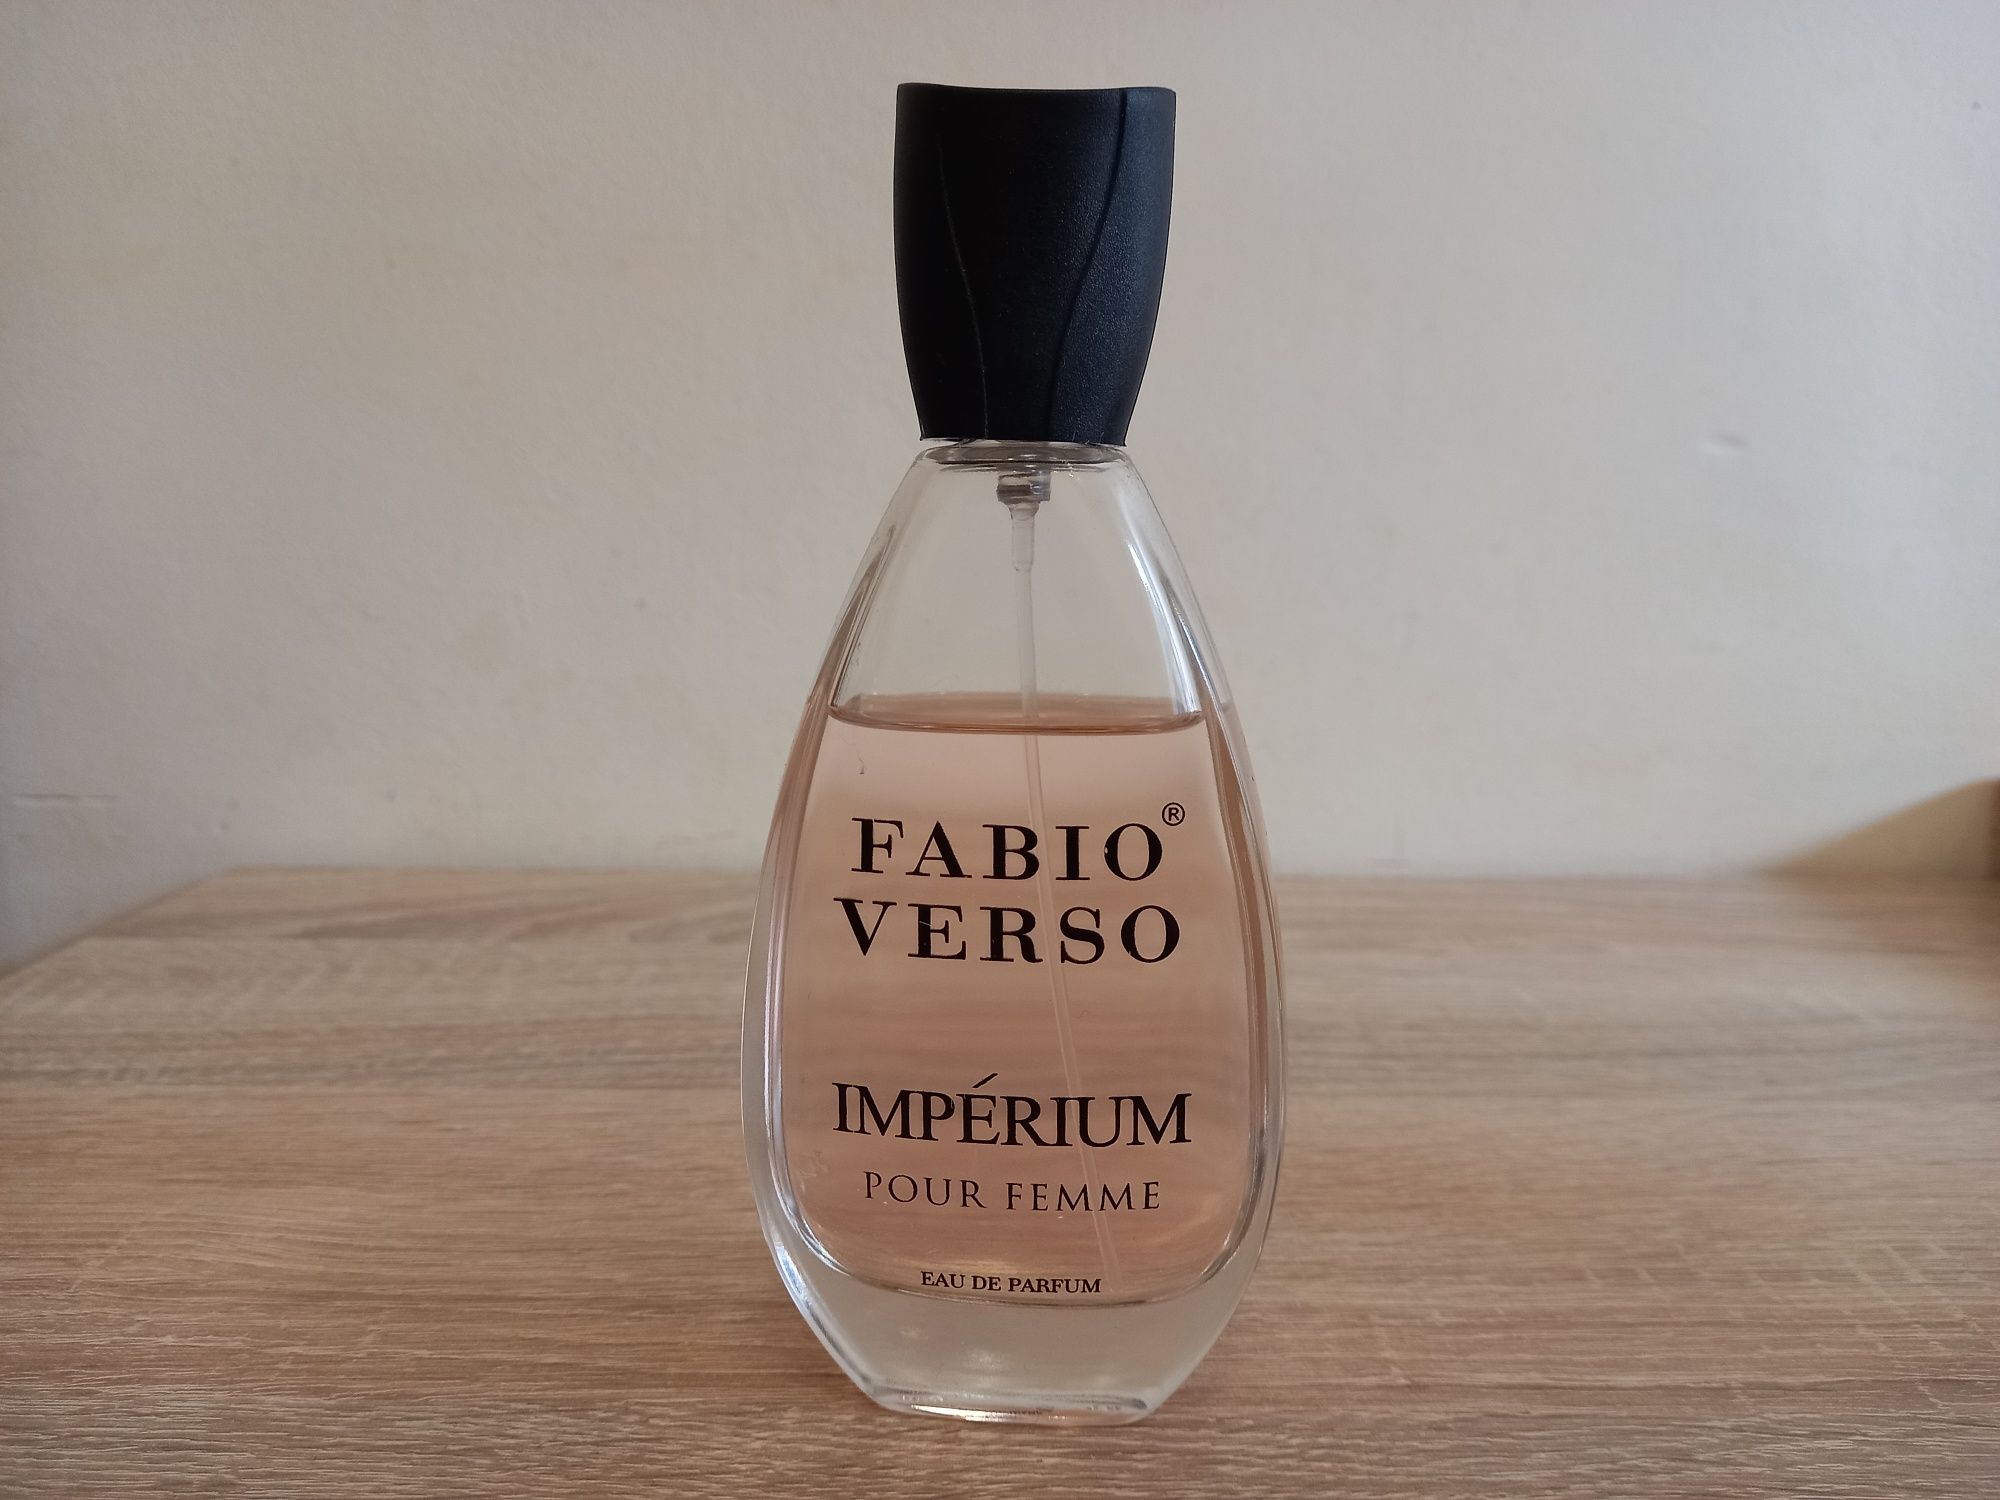 Fabio Verso Imperium